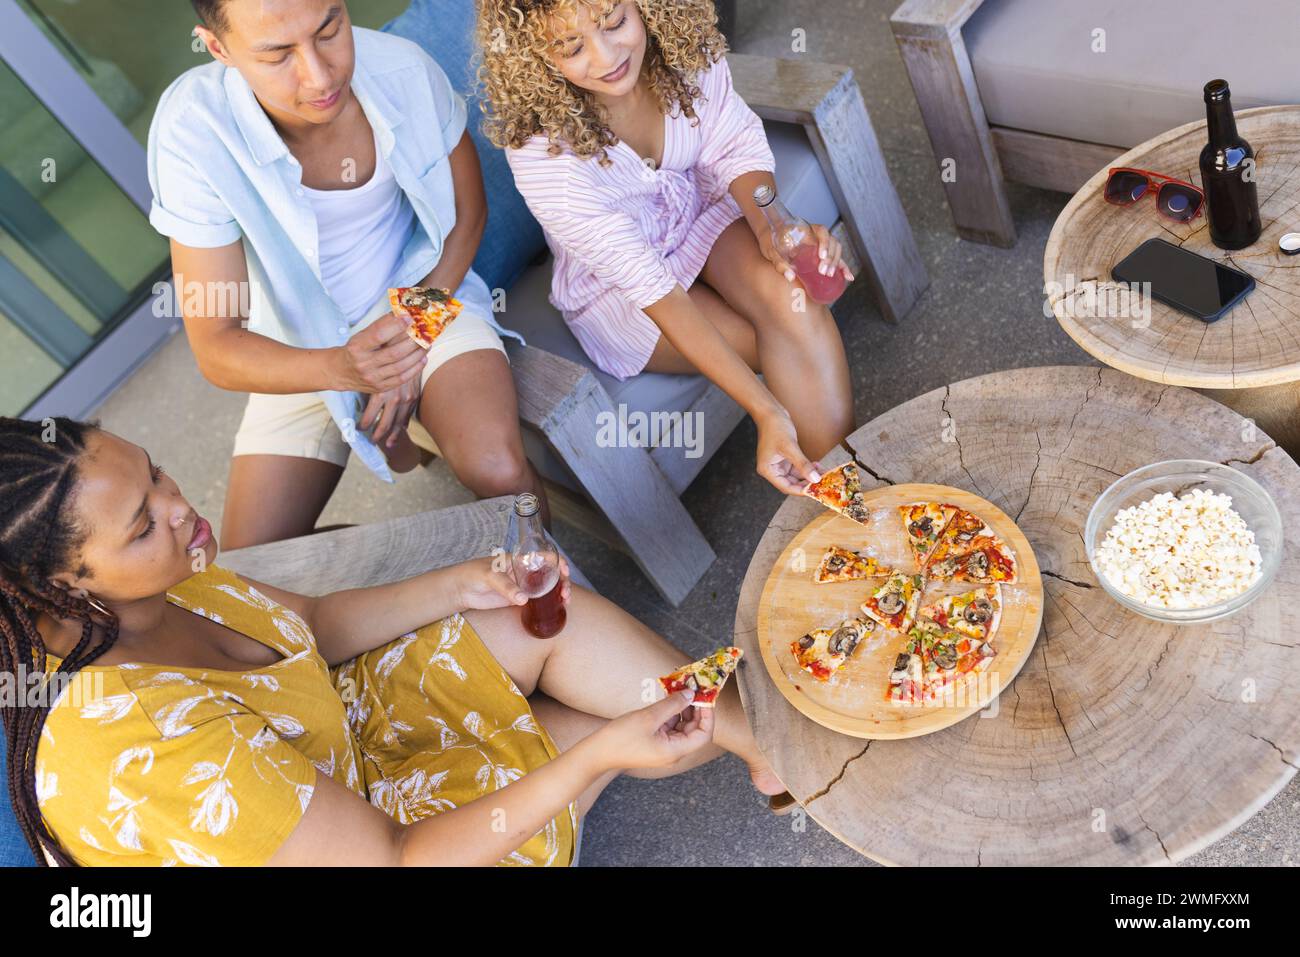 Diversi amici possono gustare insieme un pasto informale all'aperto, mangiando pizza Foto Stock